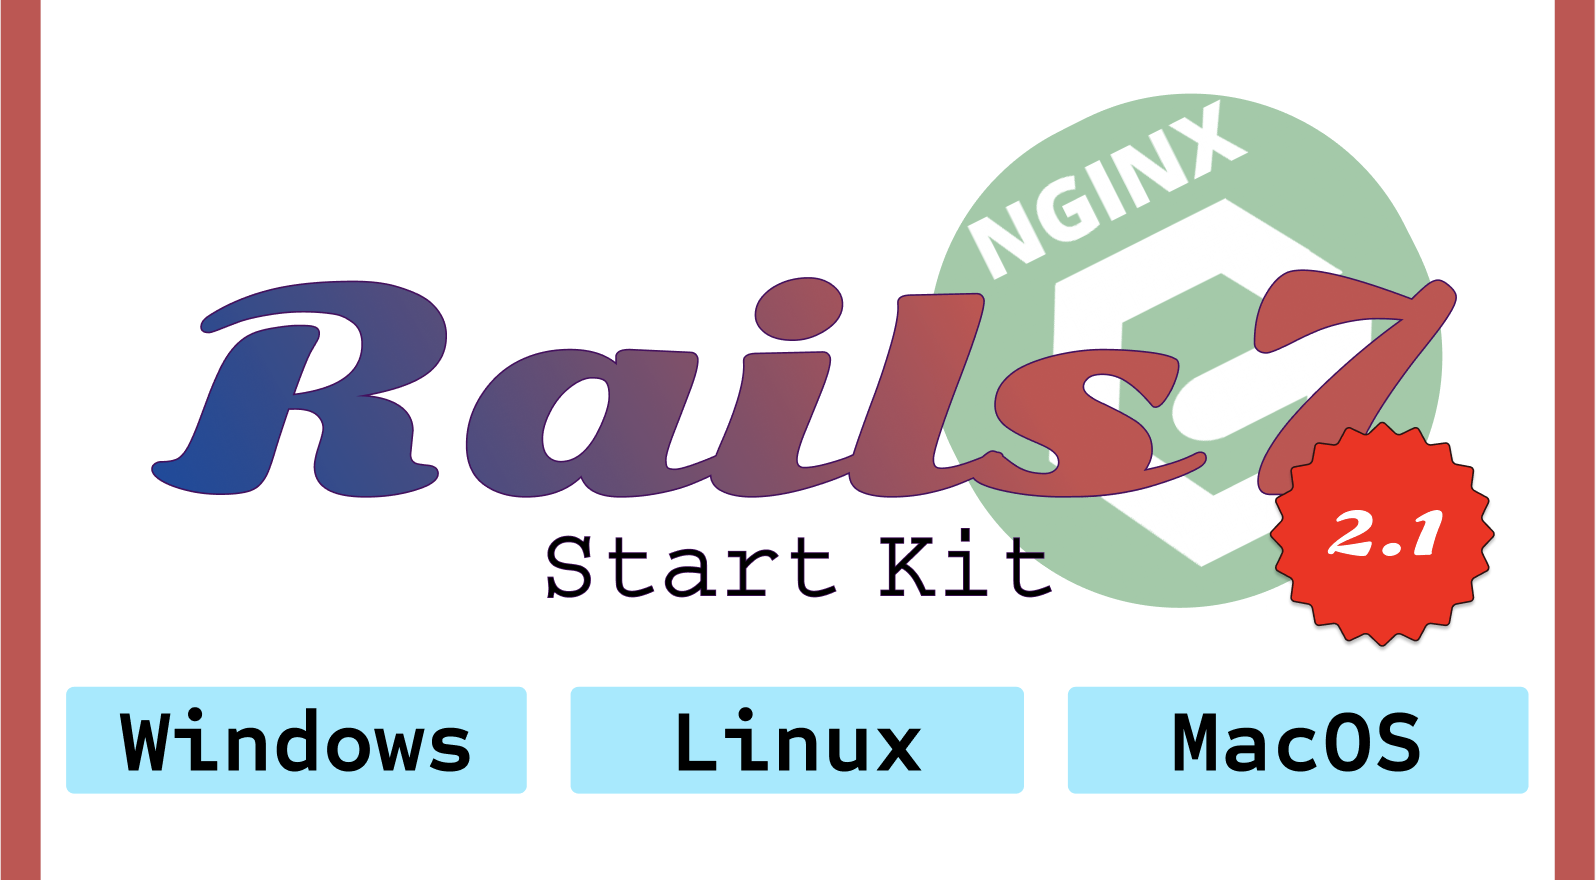 Rails 7. Start kit. v2.1